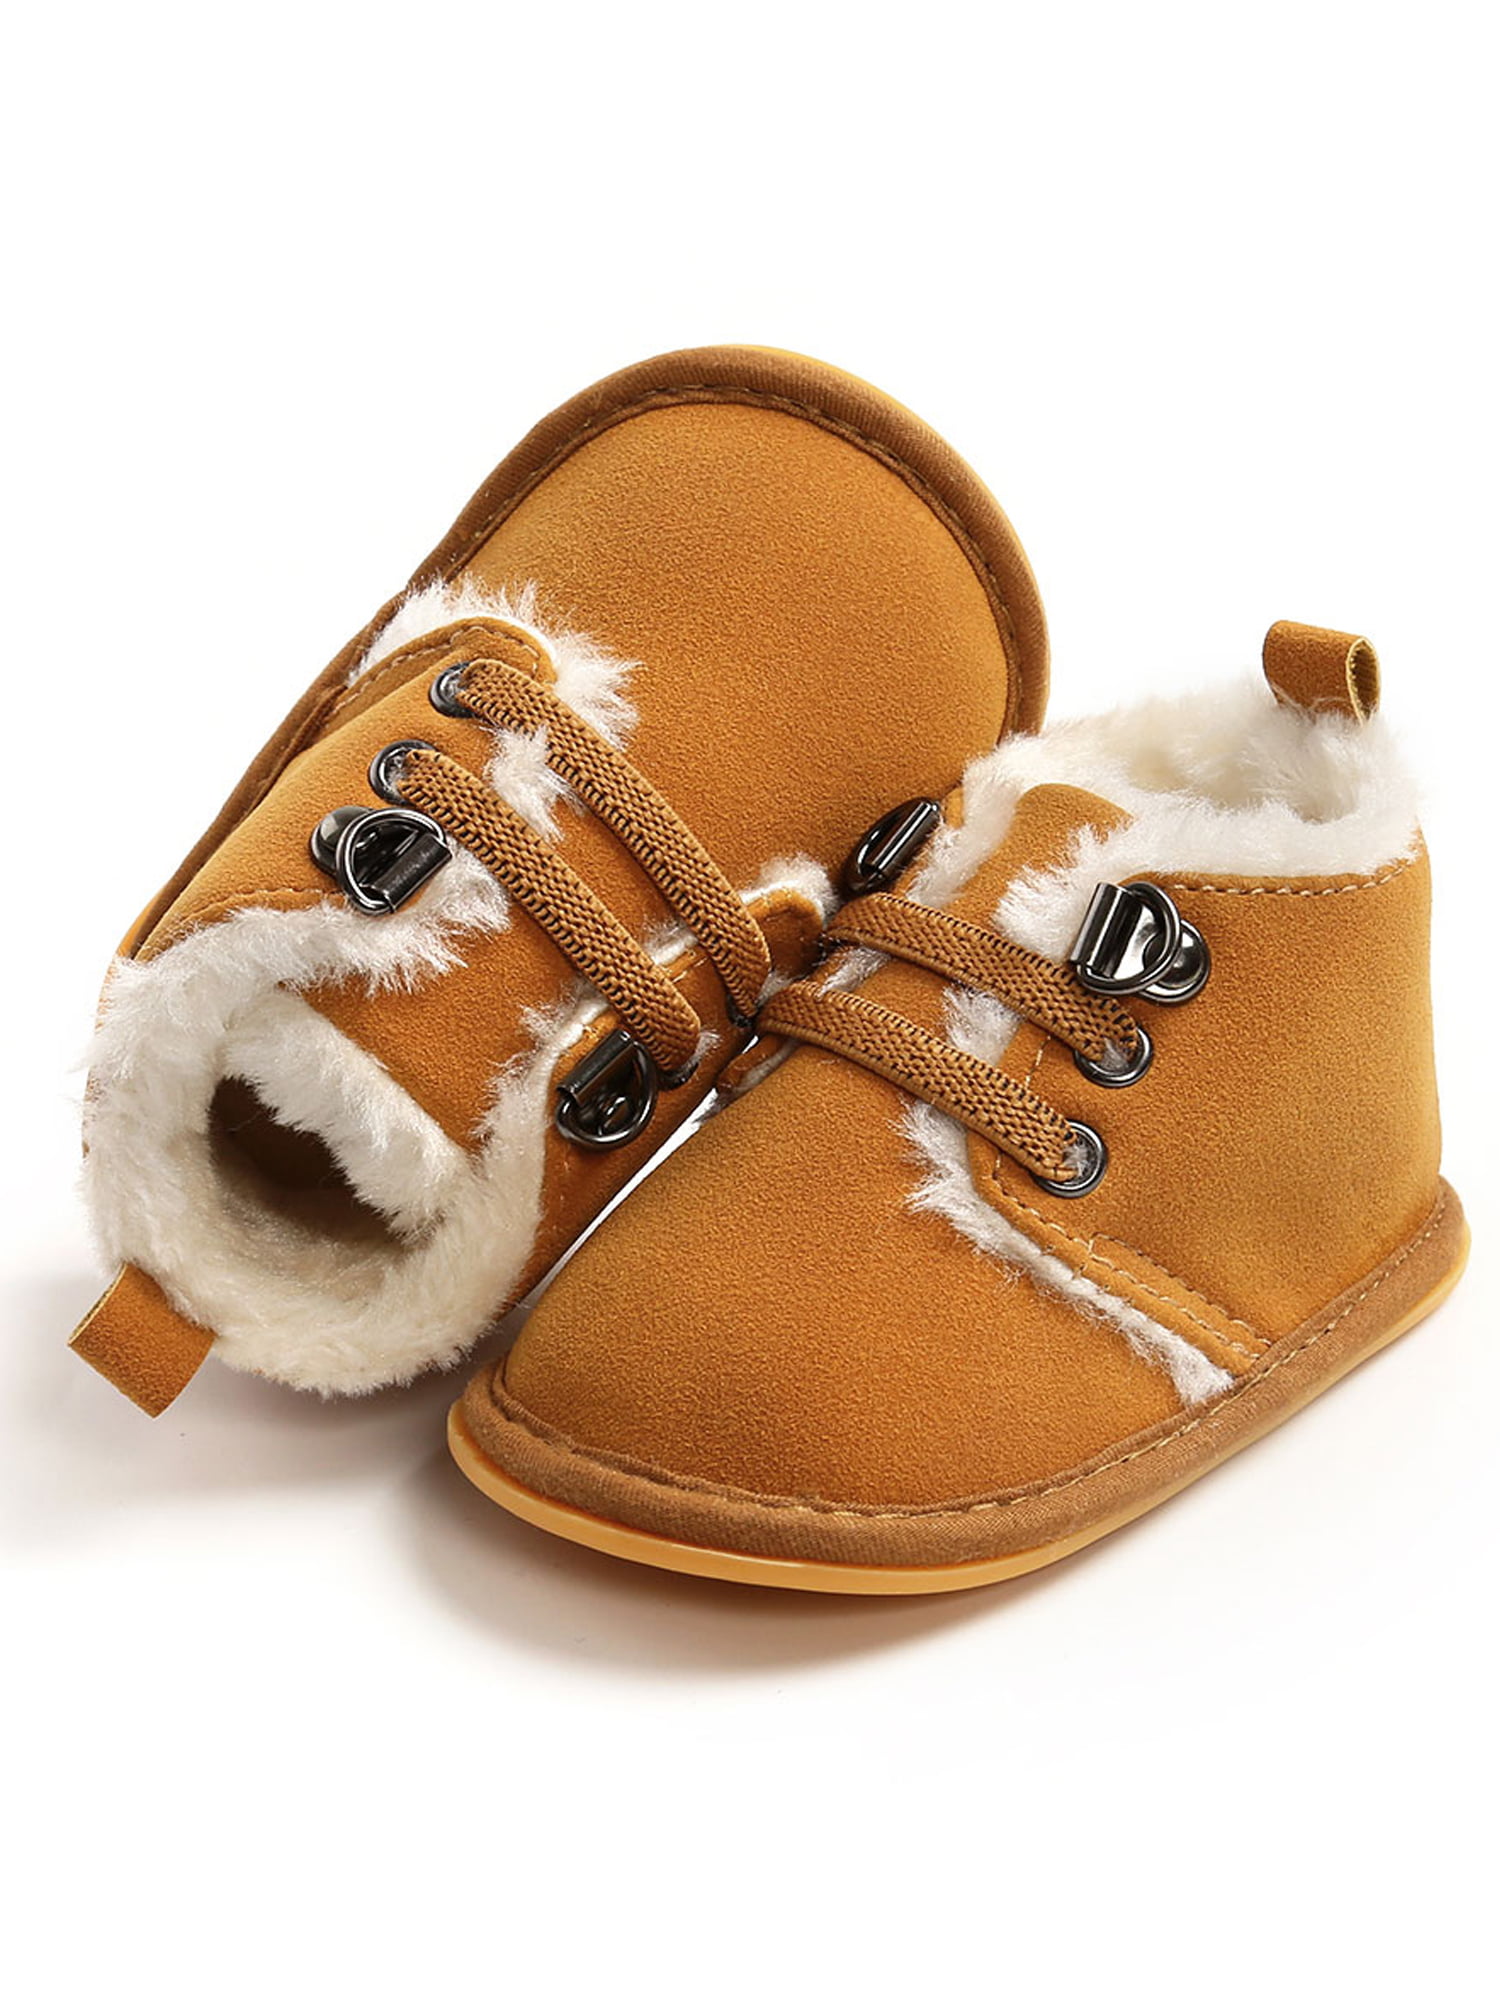 Bmnmsl Baby Booties Winter Warm Fur 